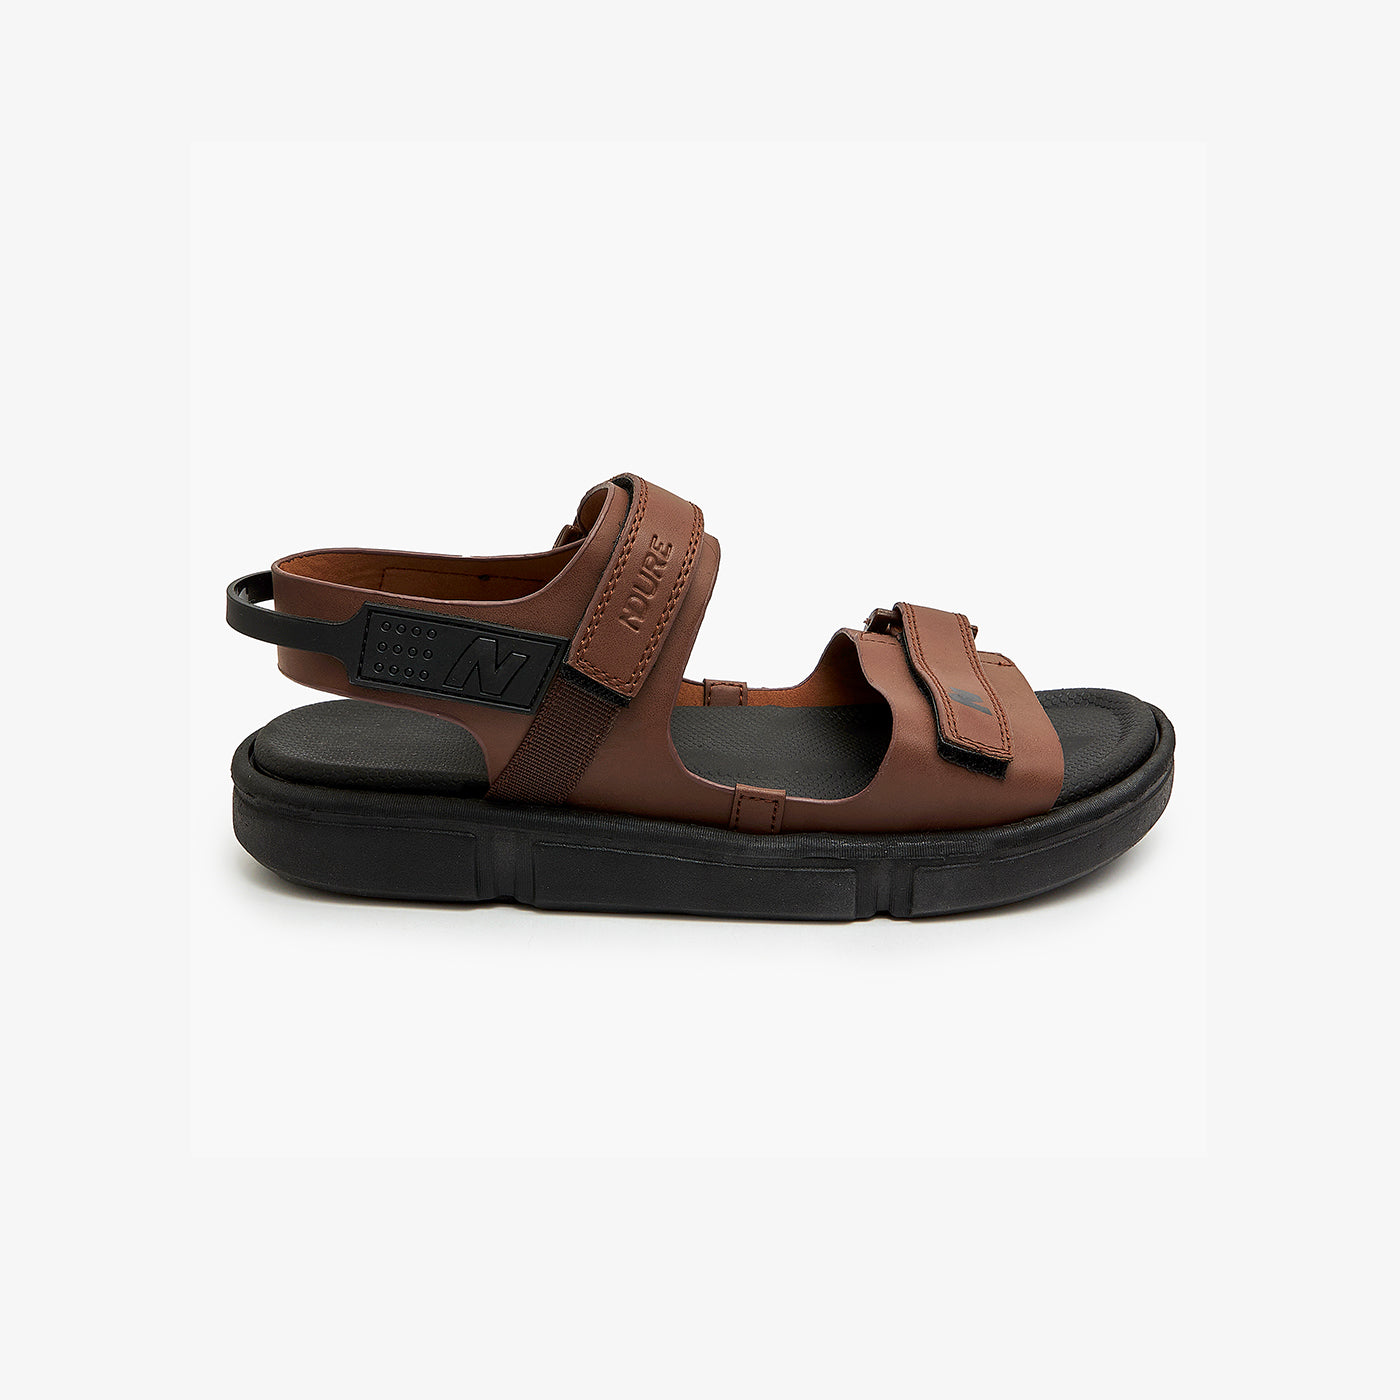 Buy TAN Men's Casual Sandals – Ndure.com